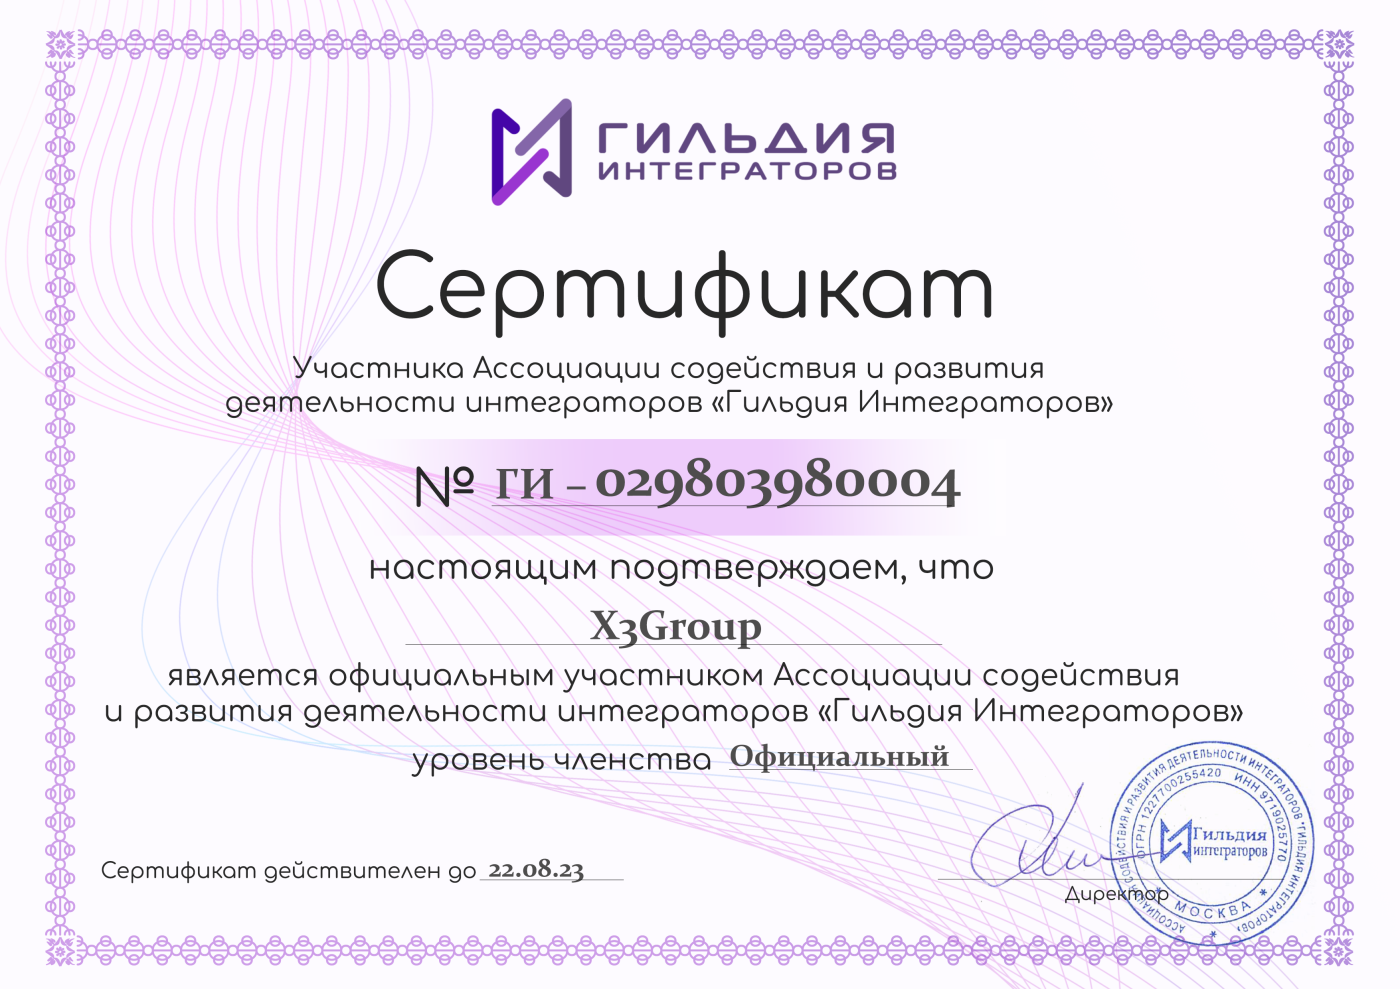 Мы получили сертификат участника "Гильдии интеграторов"